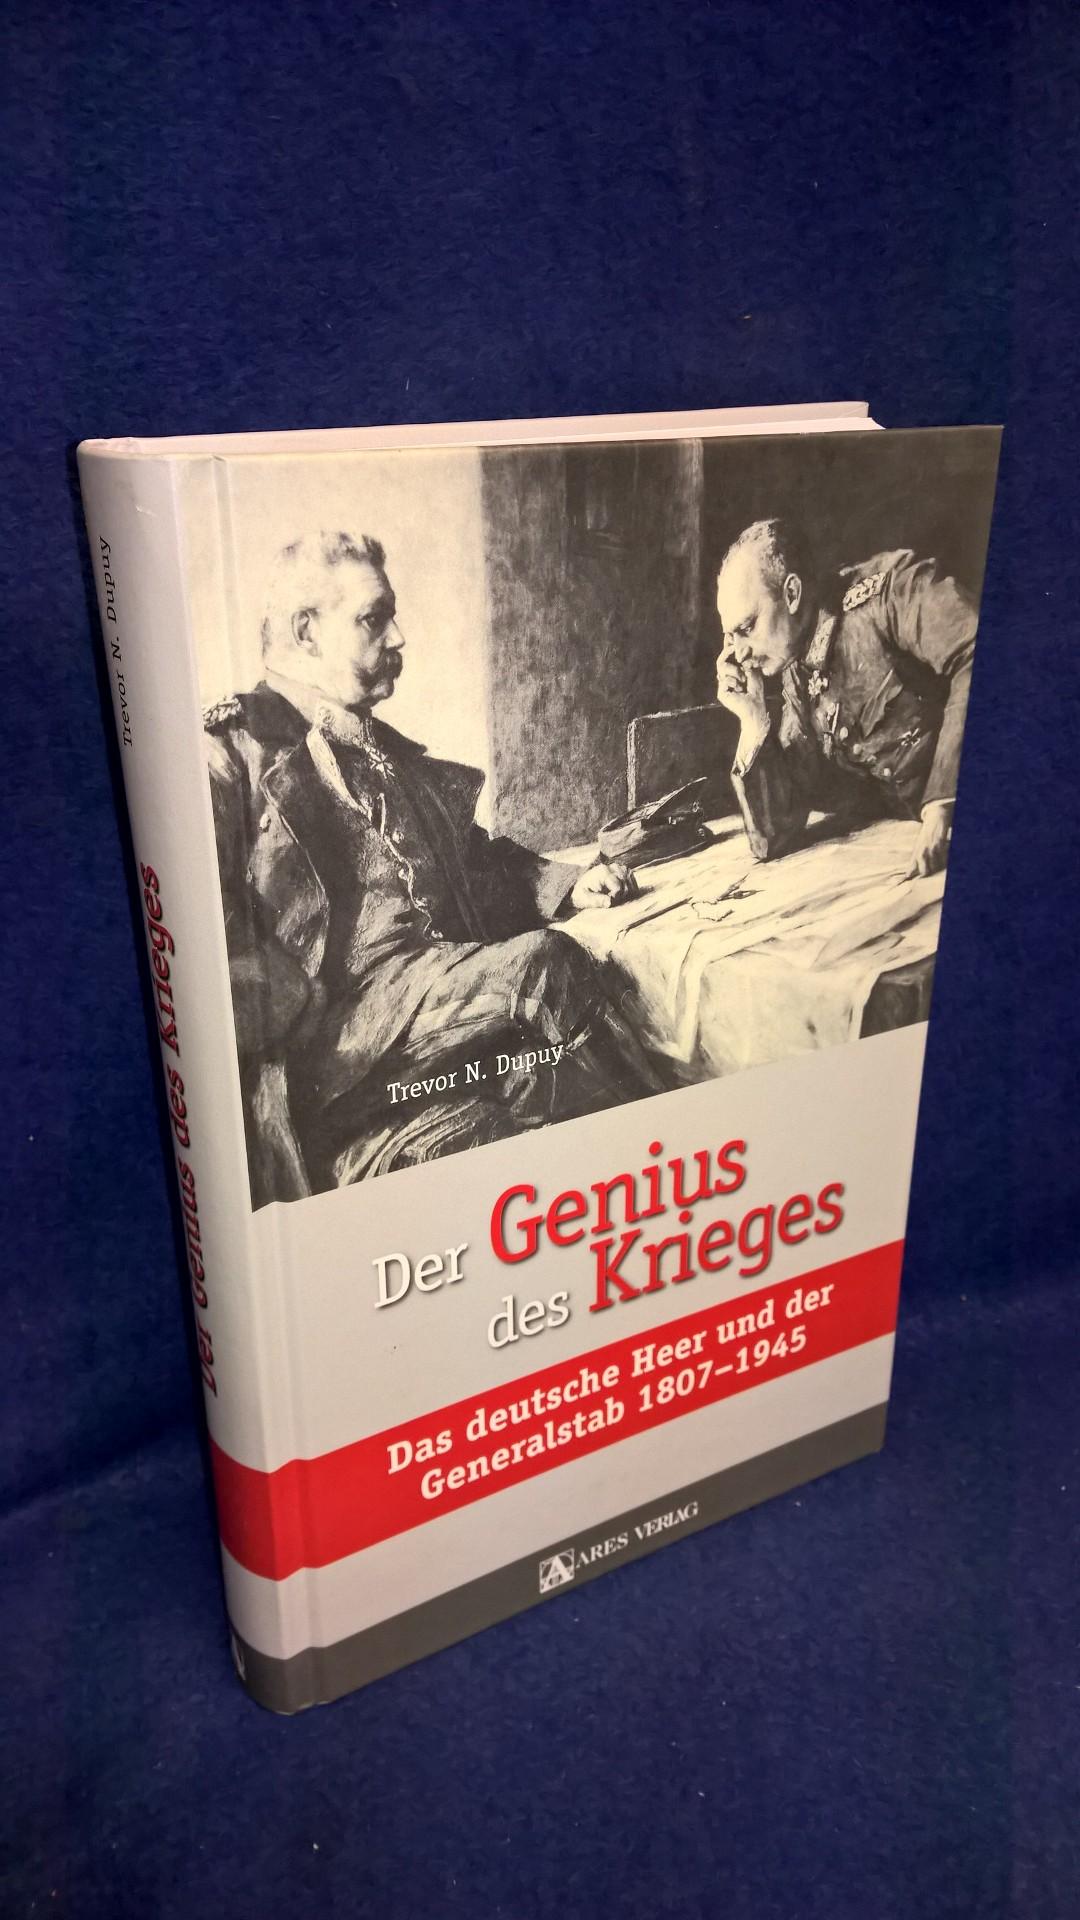 Der Genius des Krieges. Das deutsche Heer und der Generalstab 1807-1945.